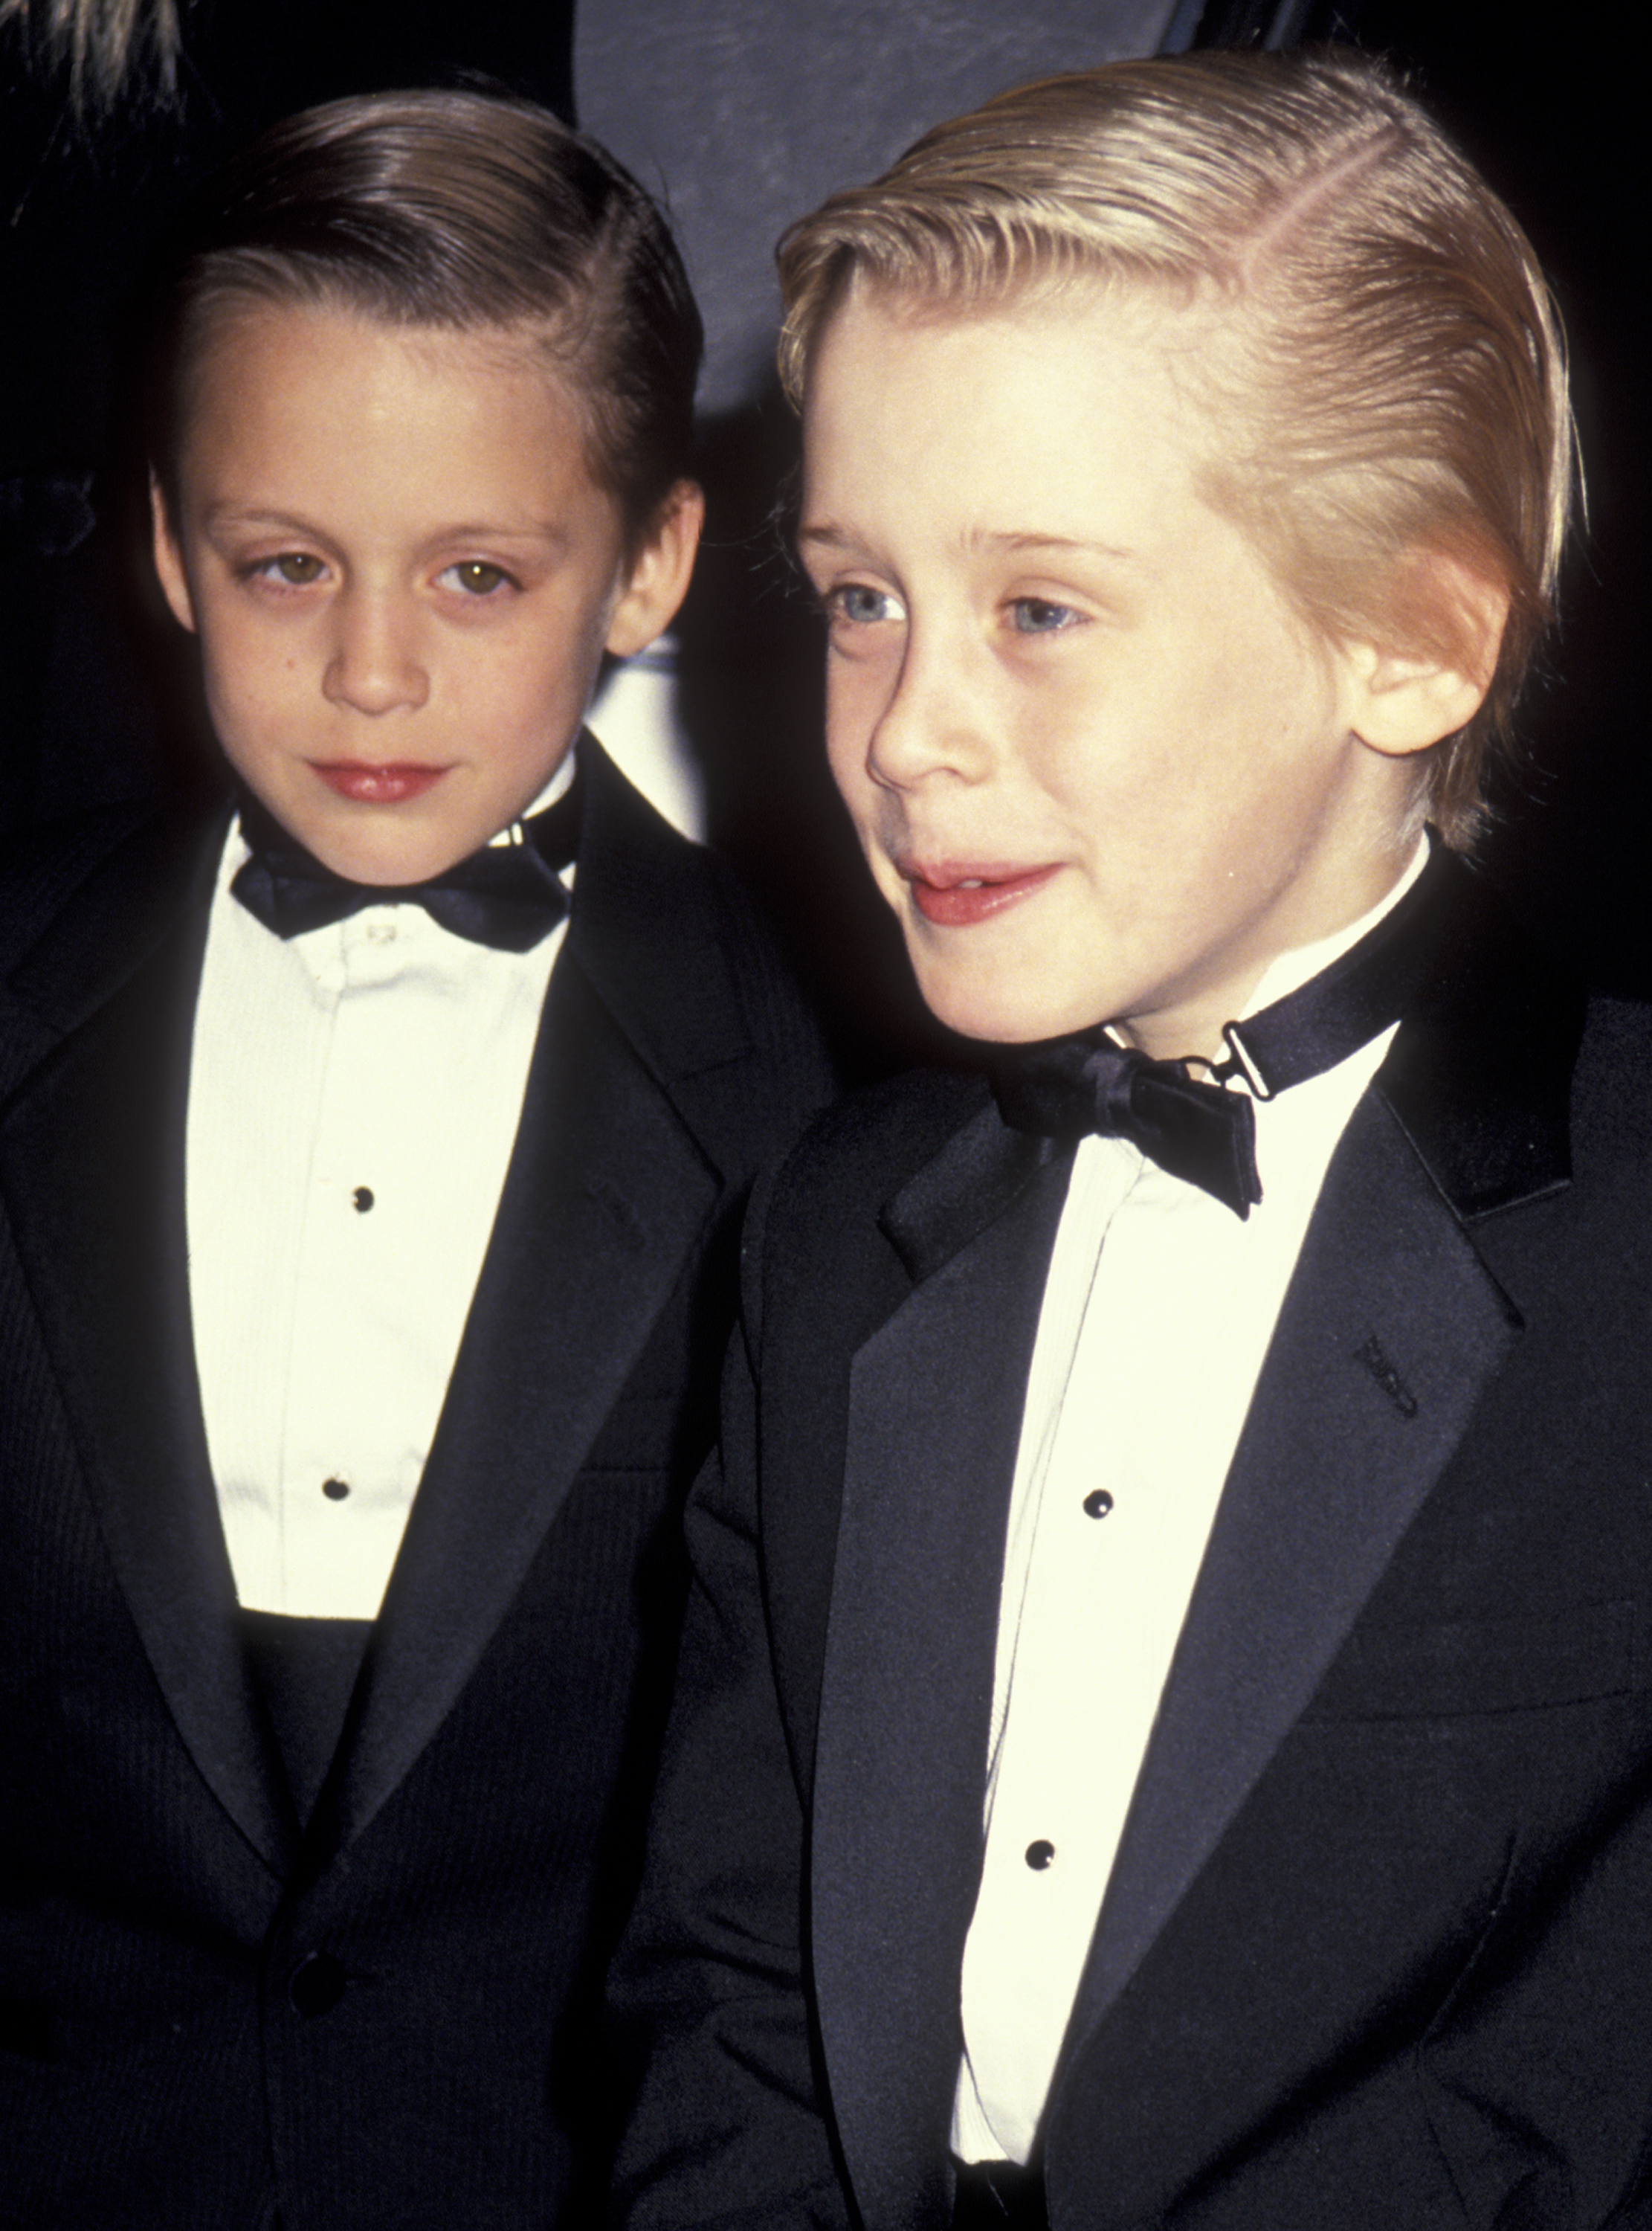 Mit einem seiner Geschwister bei den Fifth Annual American Comedy Awards in Los Angeles, Kalifornien am 9. März 1991 | Quelle: Getty Images